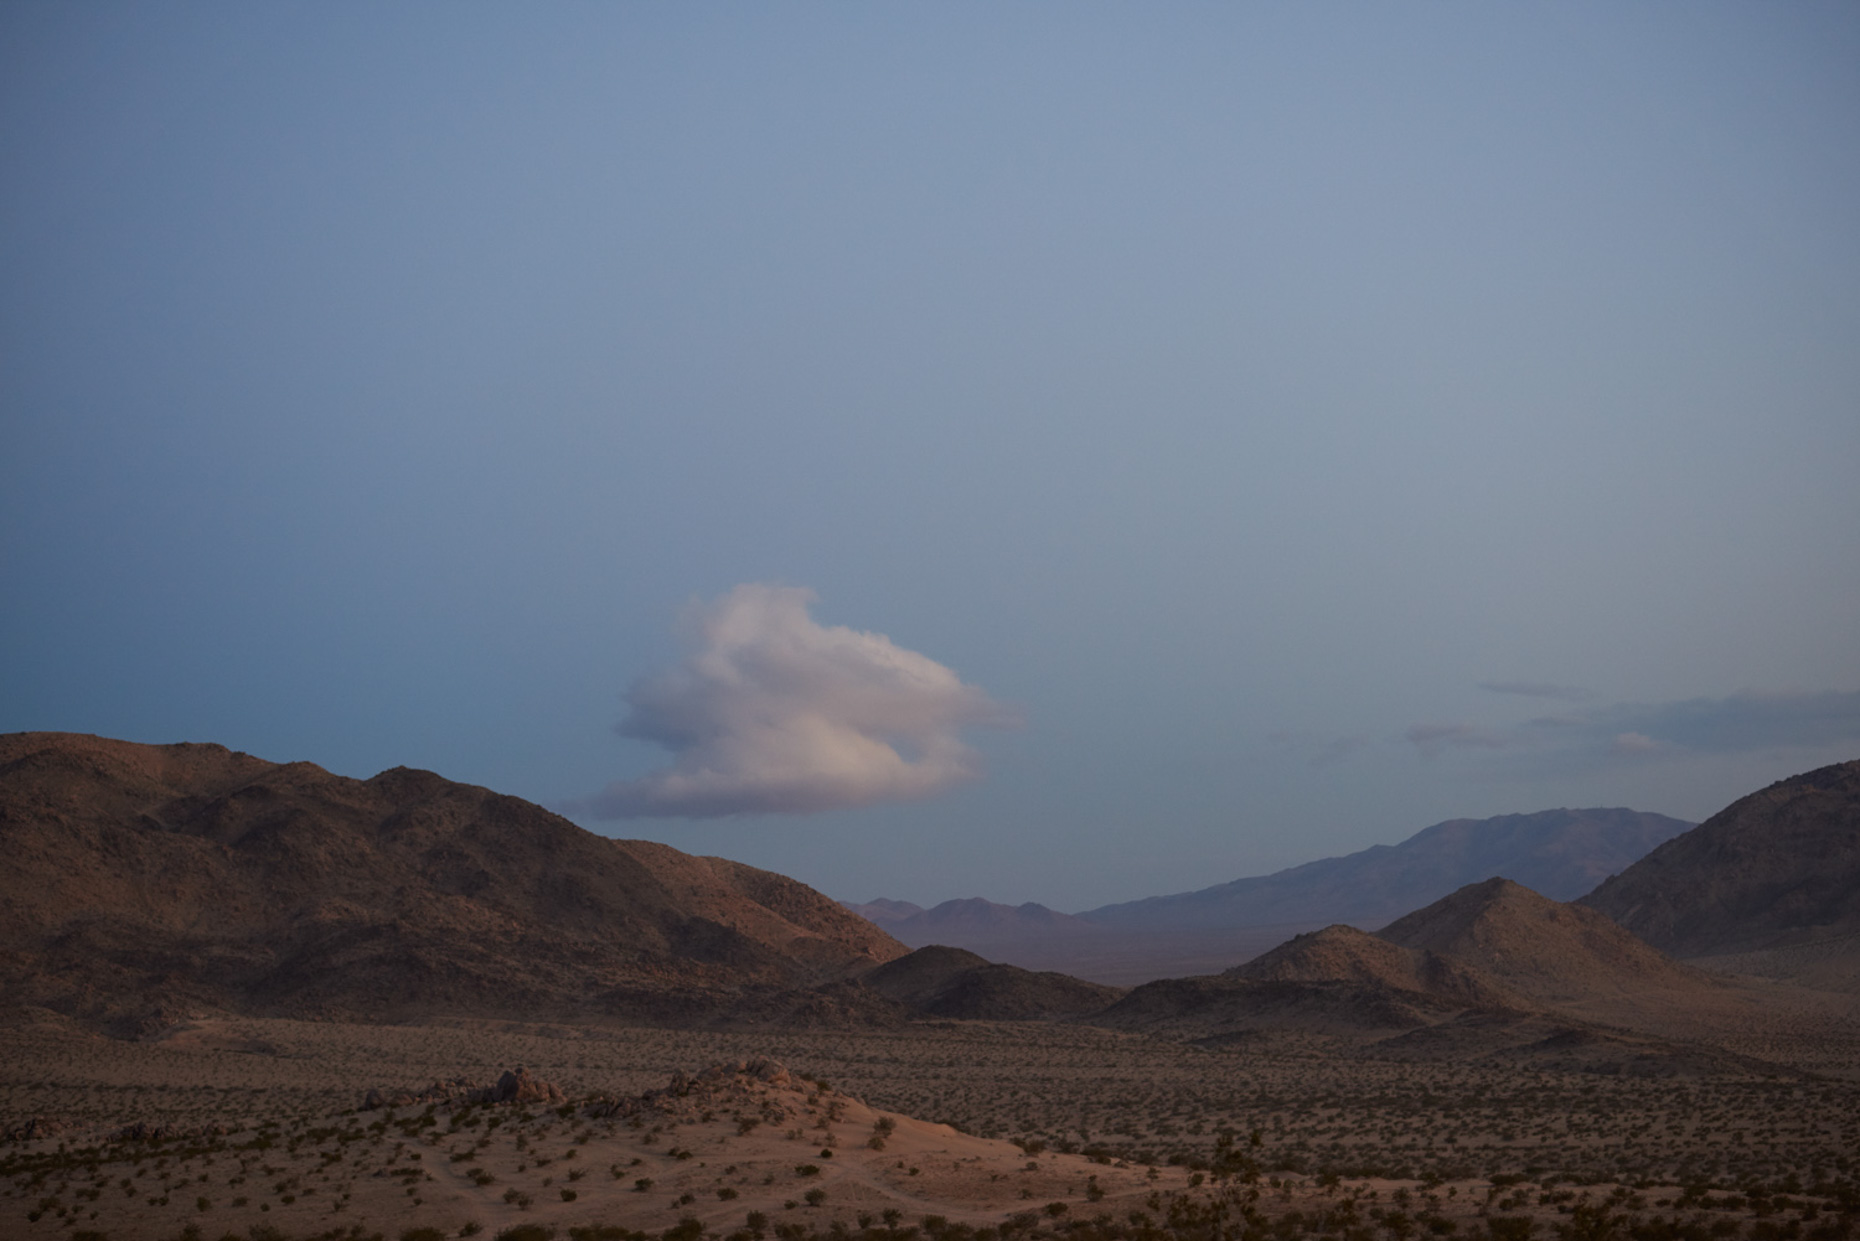 Palm desert at dusk. Digital. 2018.